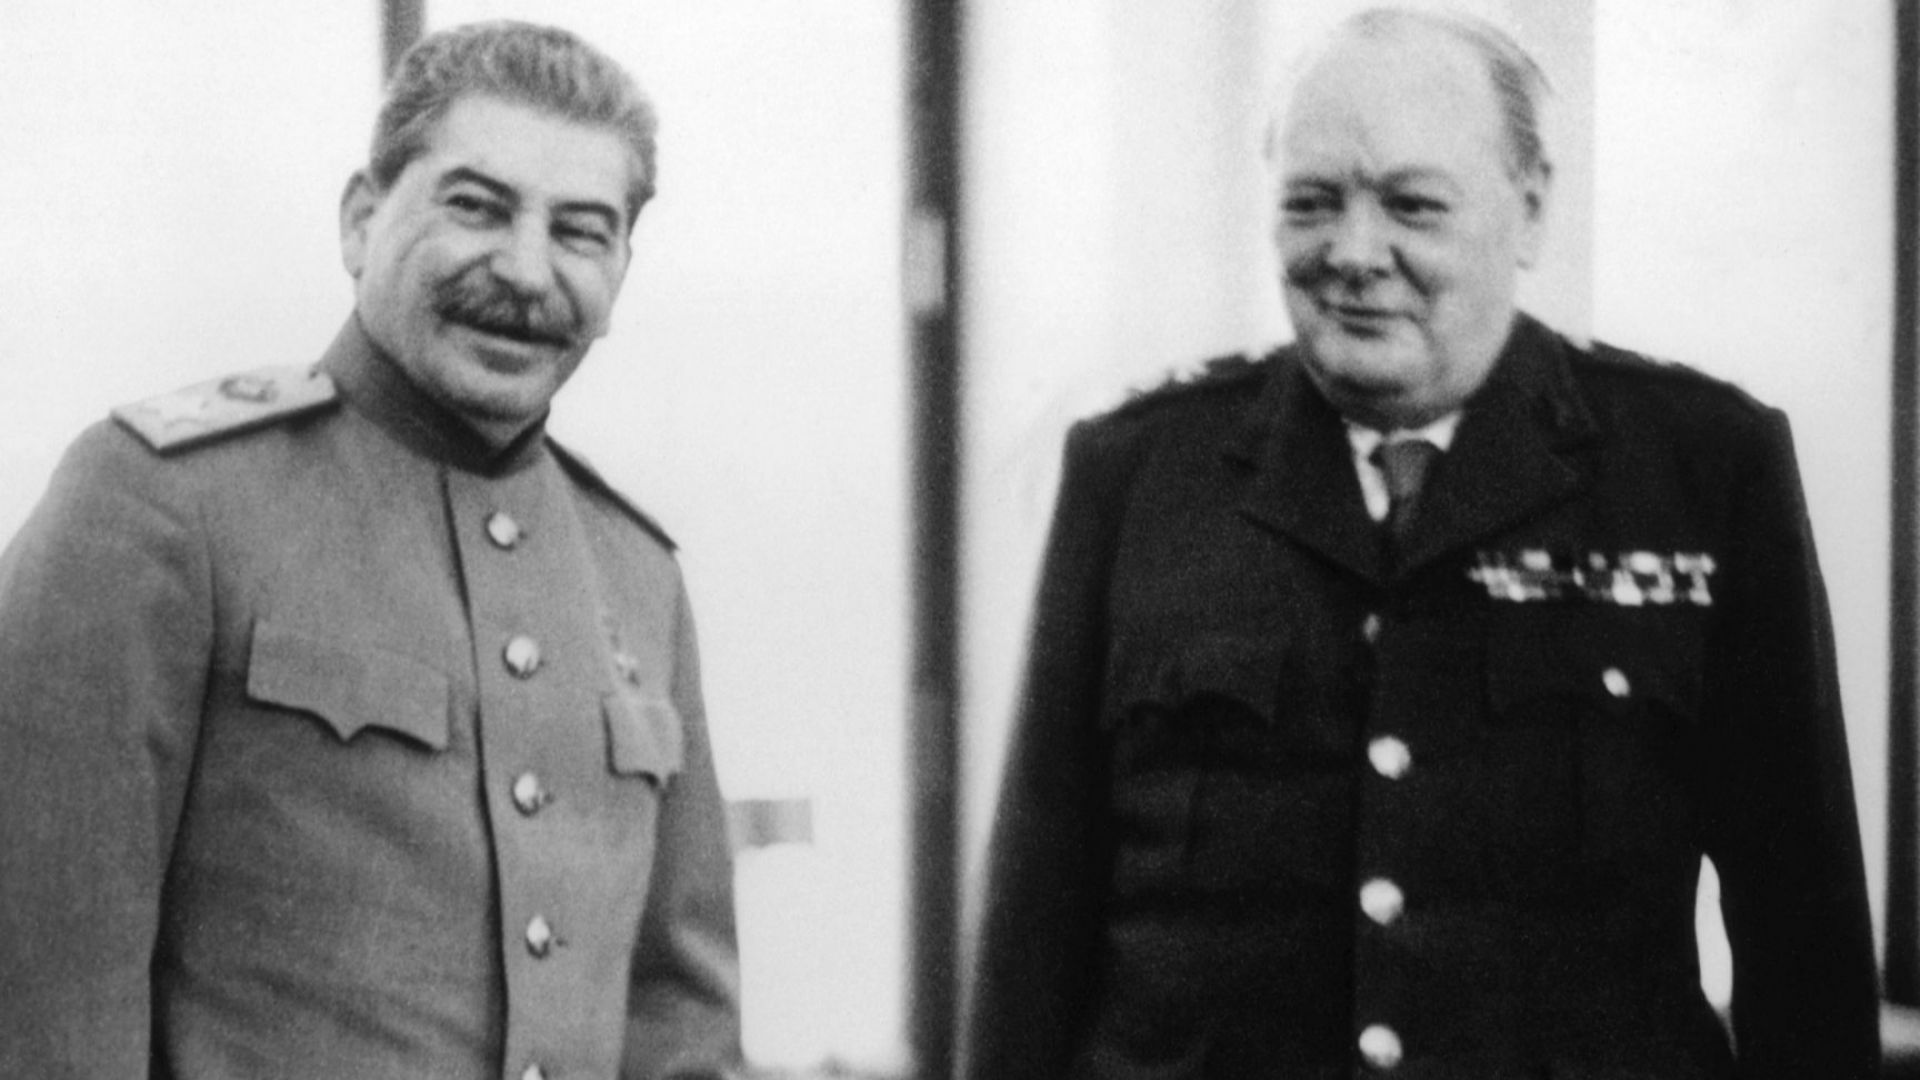 Показват за първи път оригинала на "Процентното споразумение" на Чърчил и Сталин